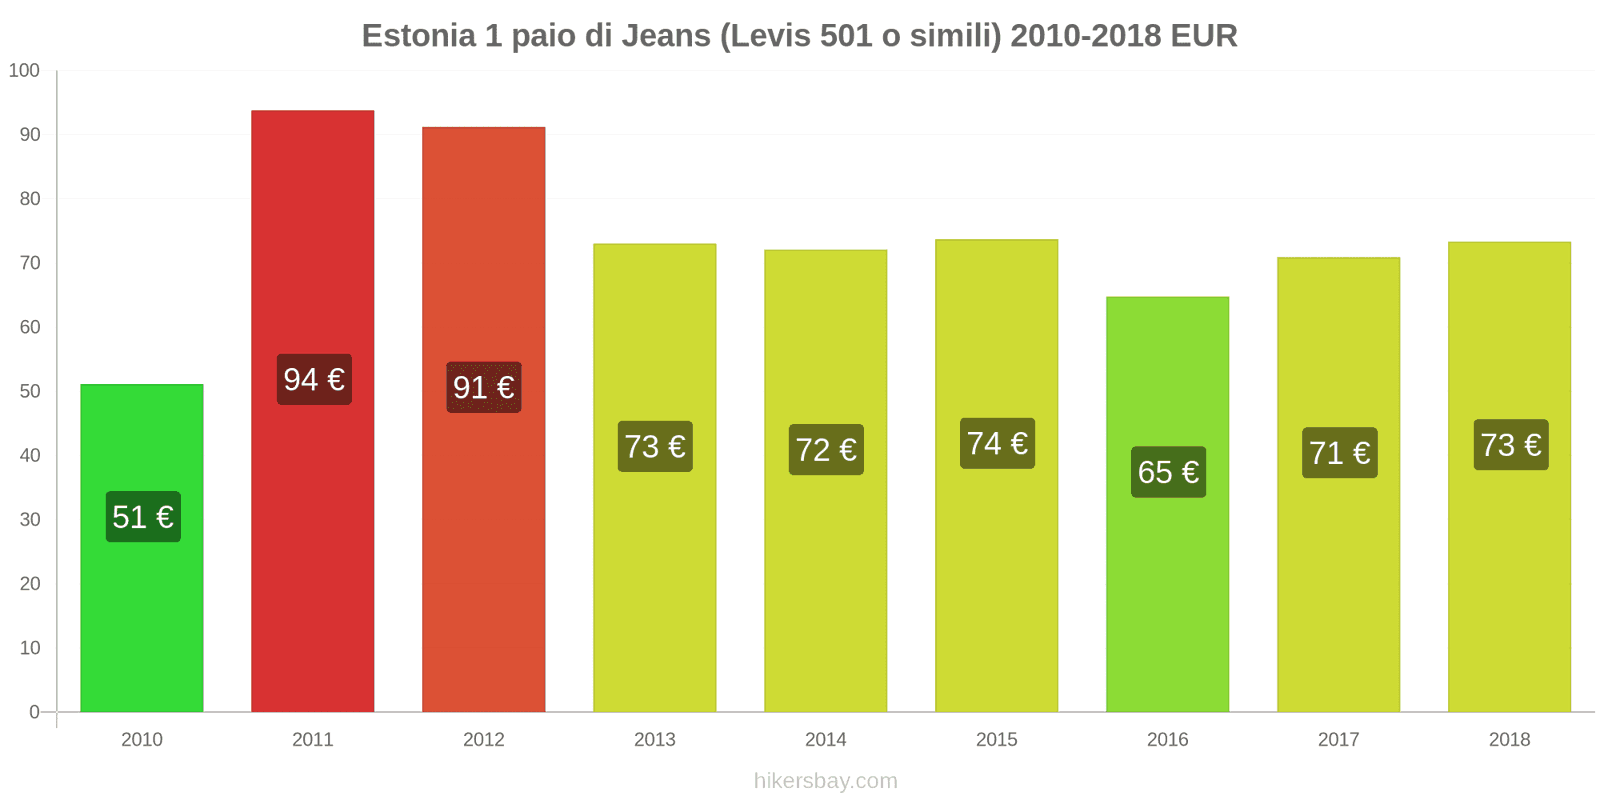 Estonia cambi di prezzo 1 paio di jeans (Levis 501 o simili) hikersbay.com